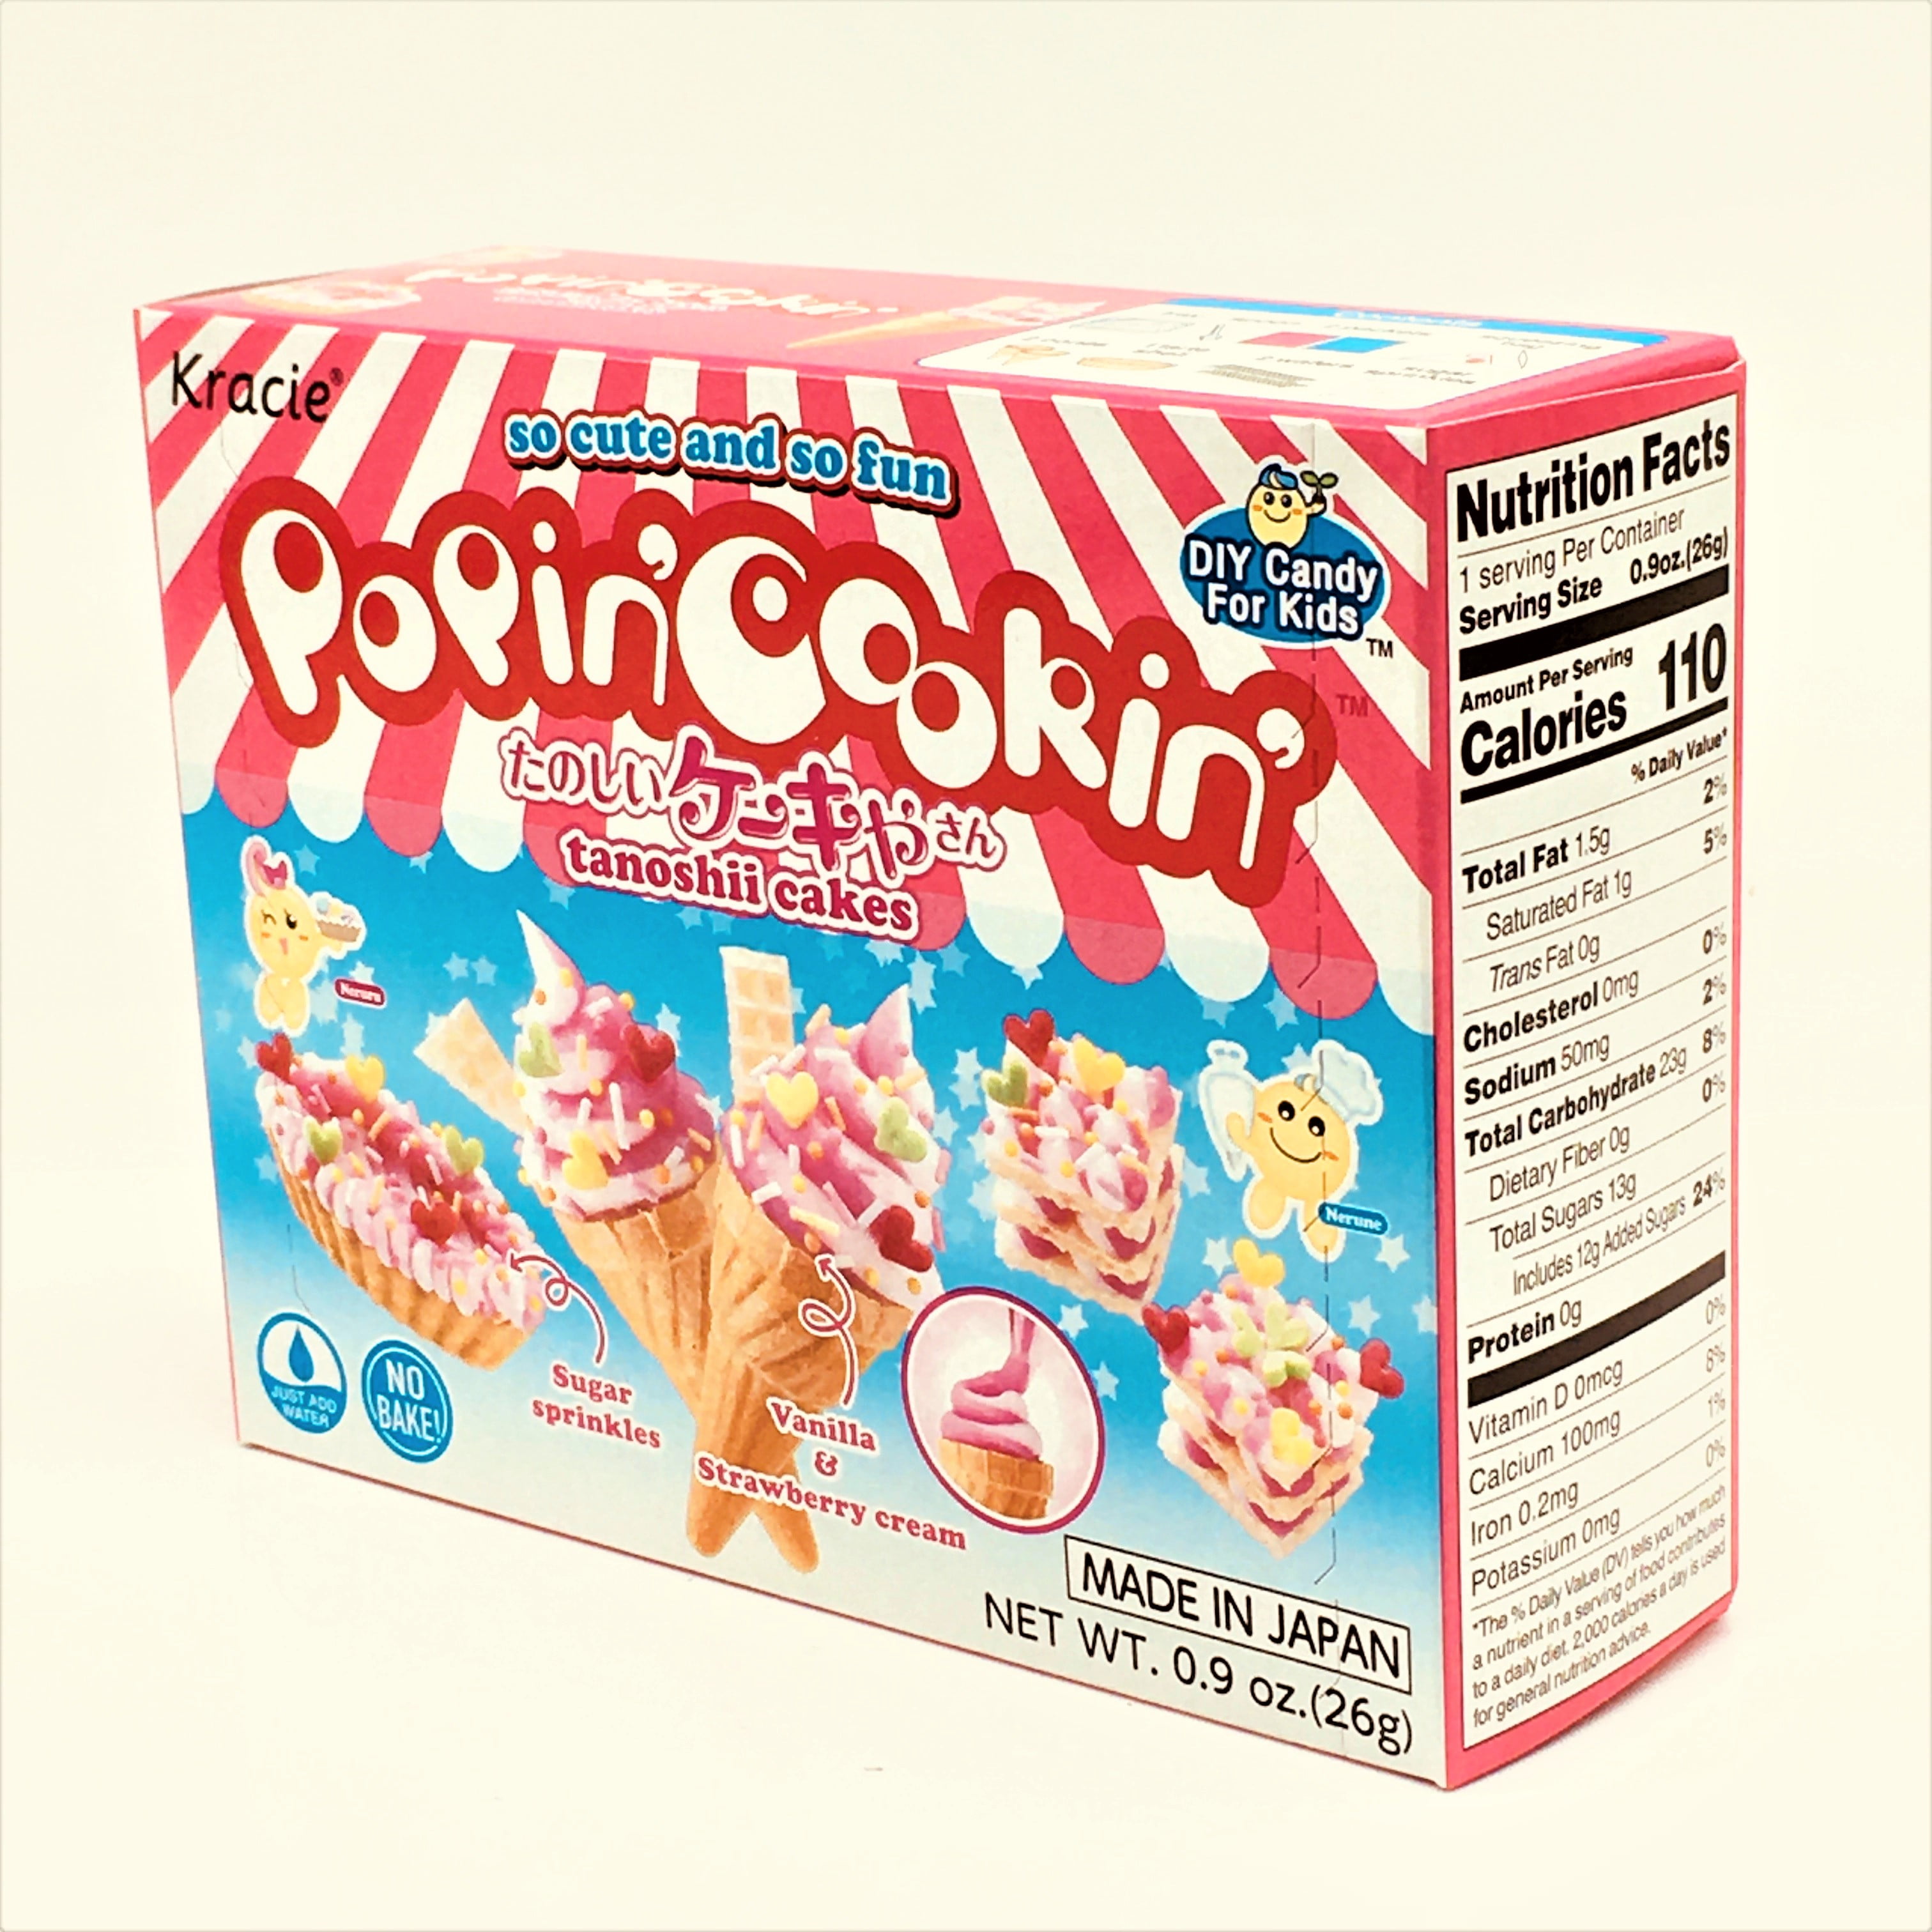 Popin Cookin kracie DIY Candy kit (set of 10) Japanese Candy w/ Gift /Sen